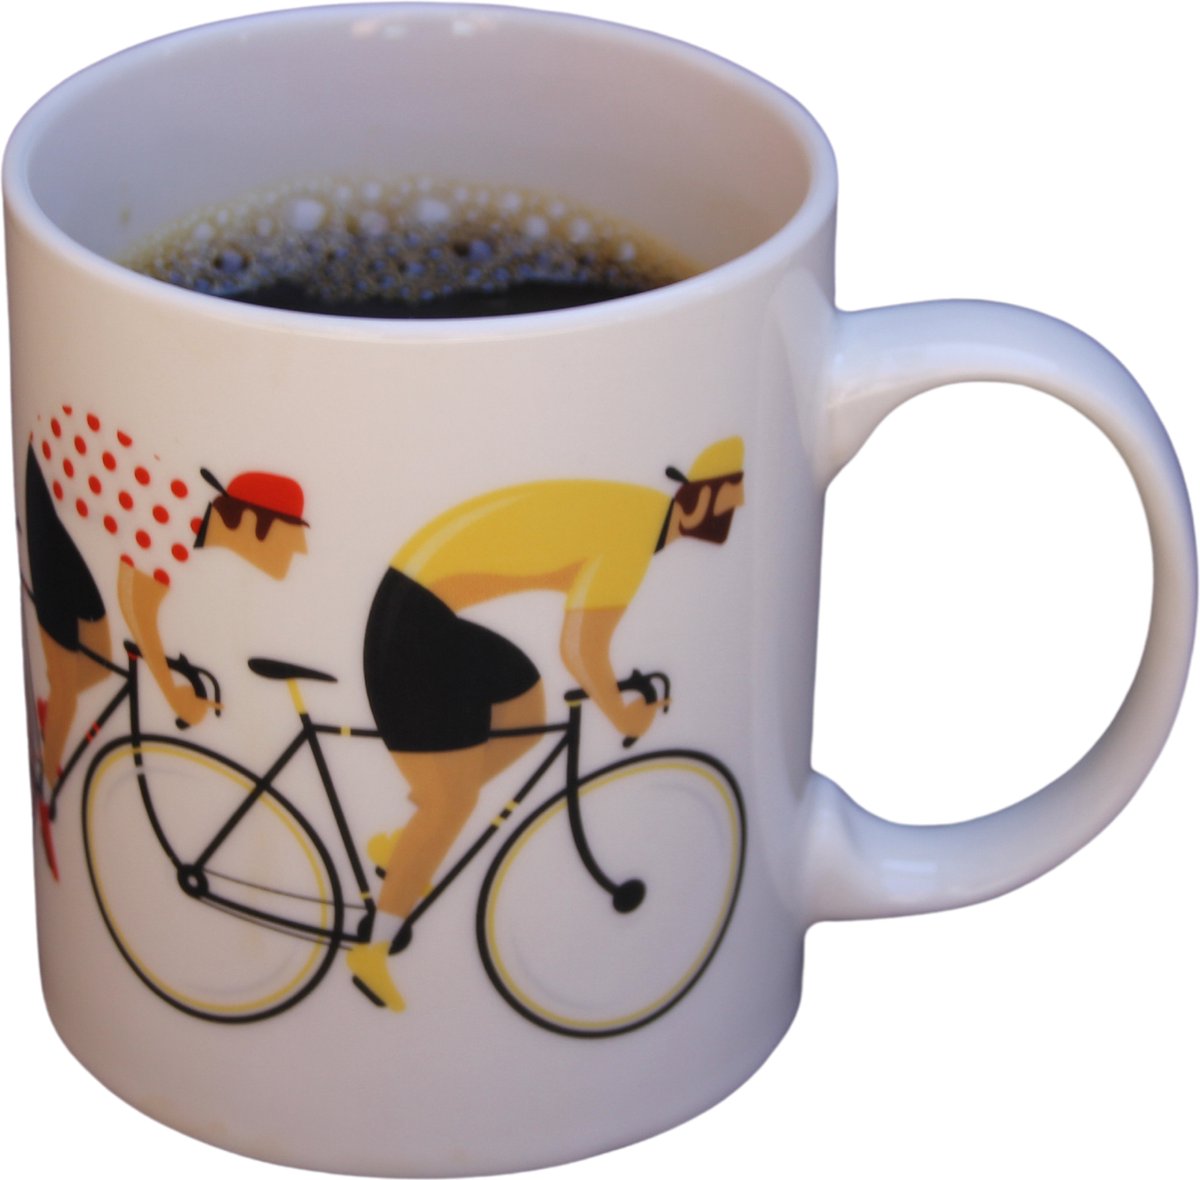 Cycle Gifts Koffiemok Racefiets - Mok - Beker - Kopje - Koffiebeker - Koffiekopje - Fietser - Cadeau - Geel